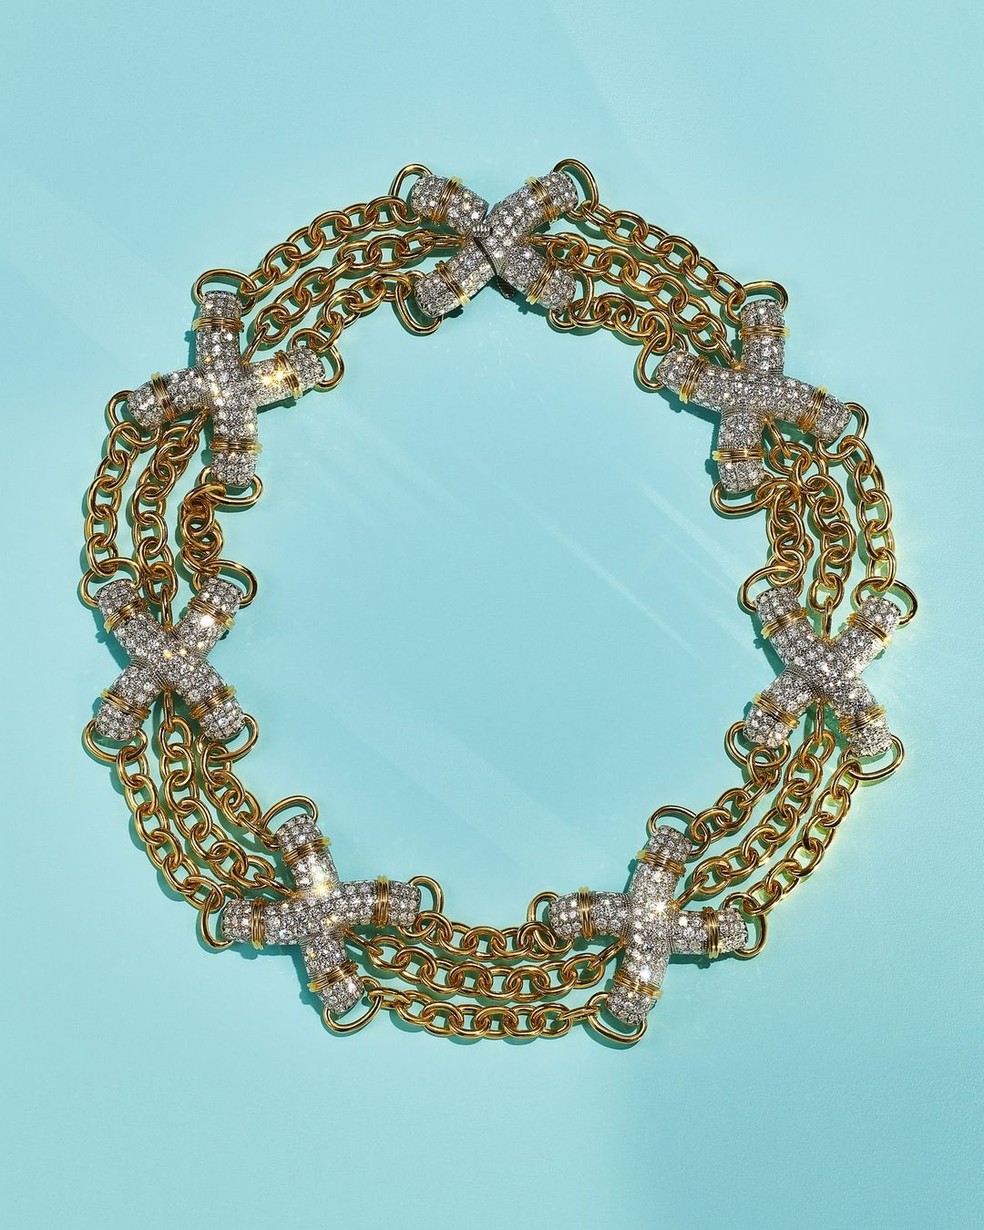 Colar Jean Schlumberger's Pavé X Link da Tiffany & Co usado por Bruna Marquezine — Foto: Reprodução/ Instagram 